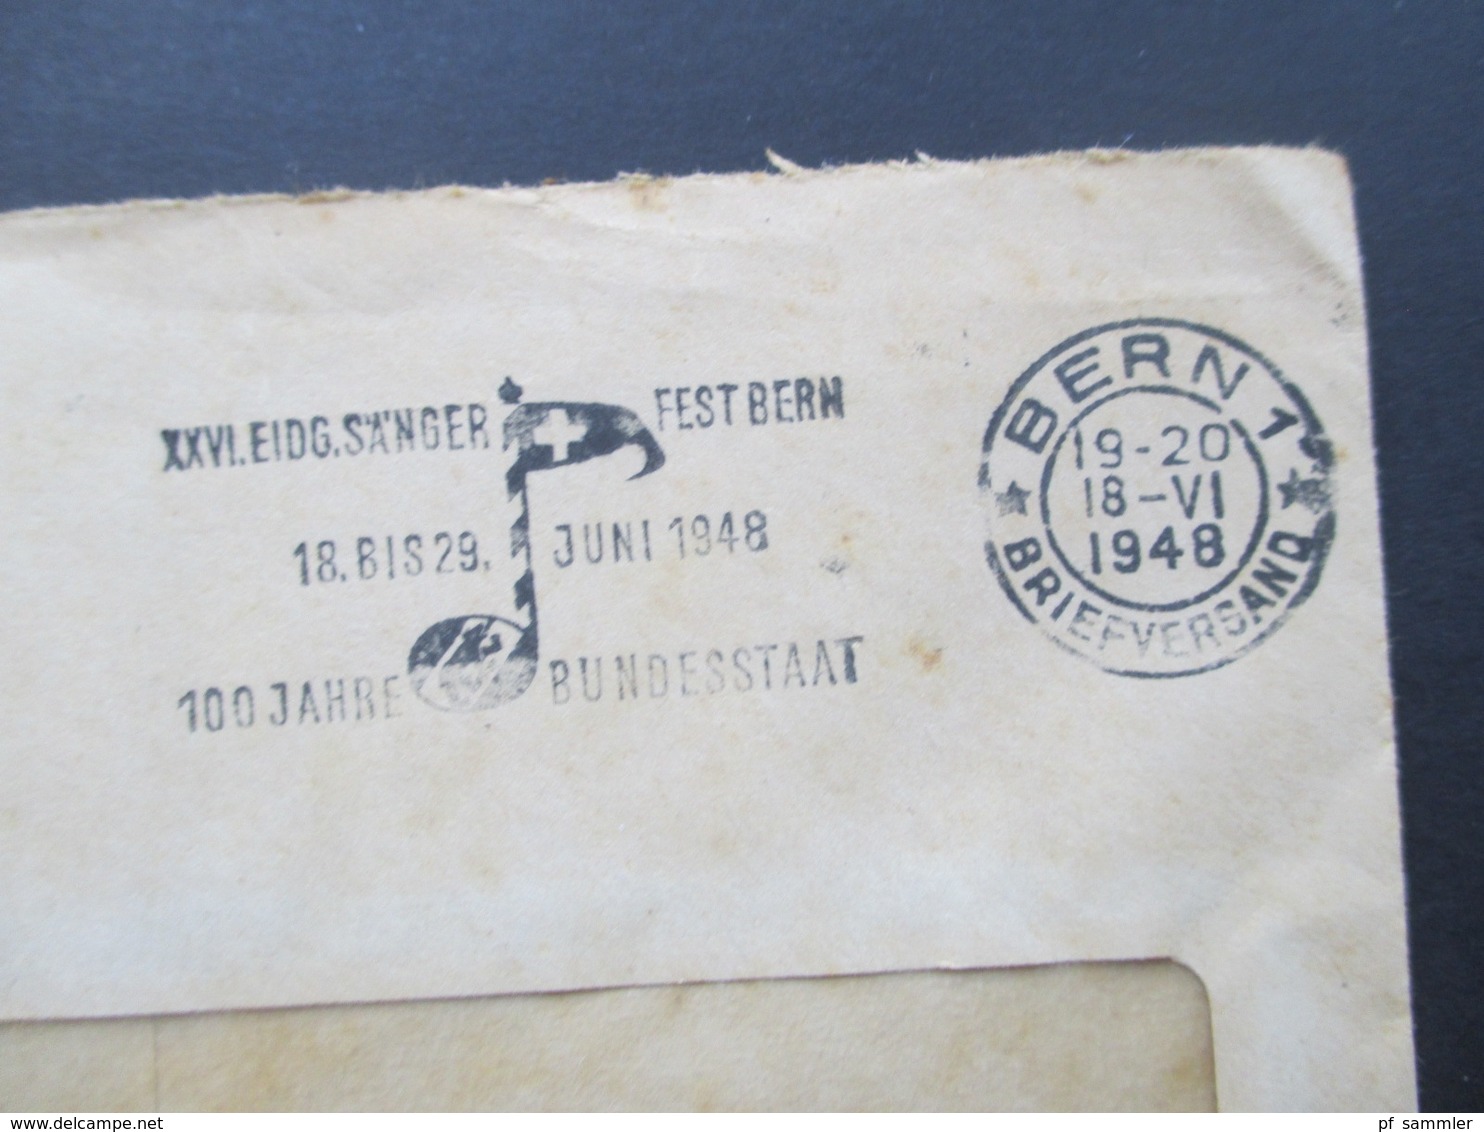 Schweiz 1948 Officiel Eidgenössisches Militärdepartement Abteilung Für Luftschutz. Stempel Bern 100 Jahre Bundesstaat - Storia Postale